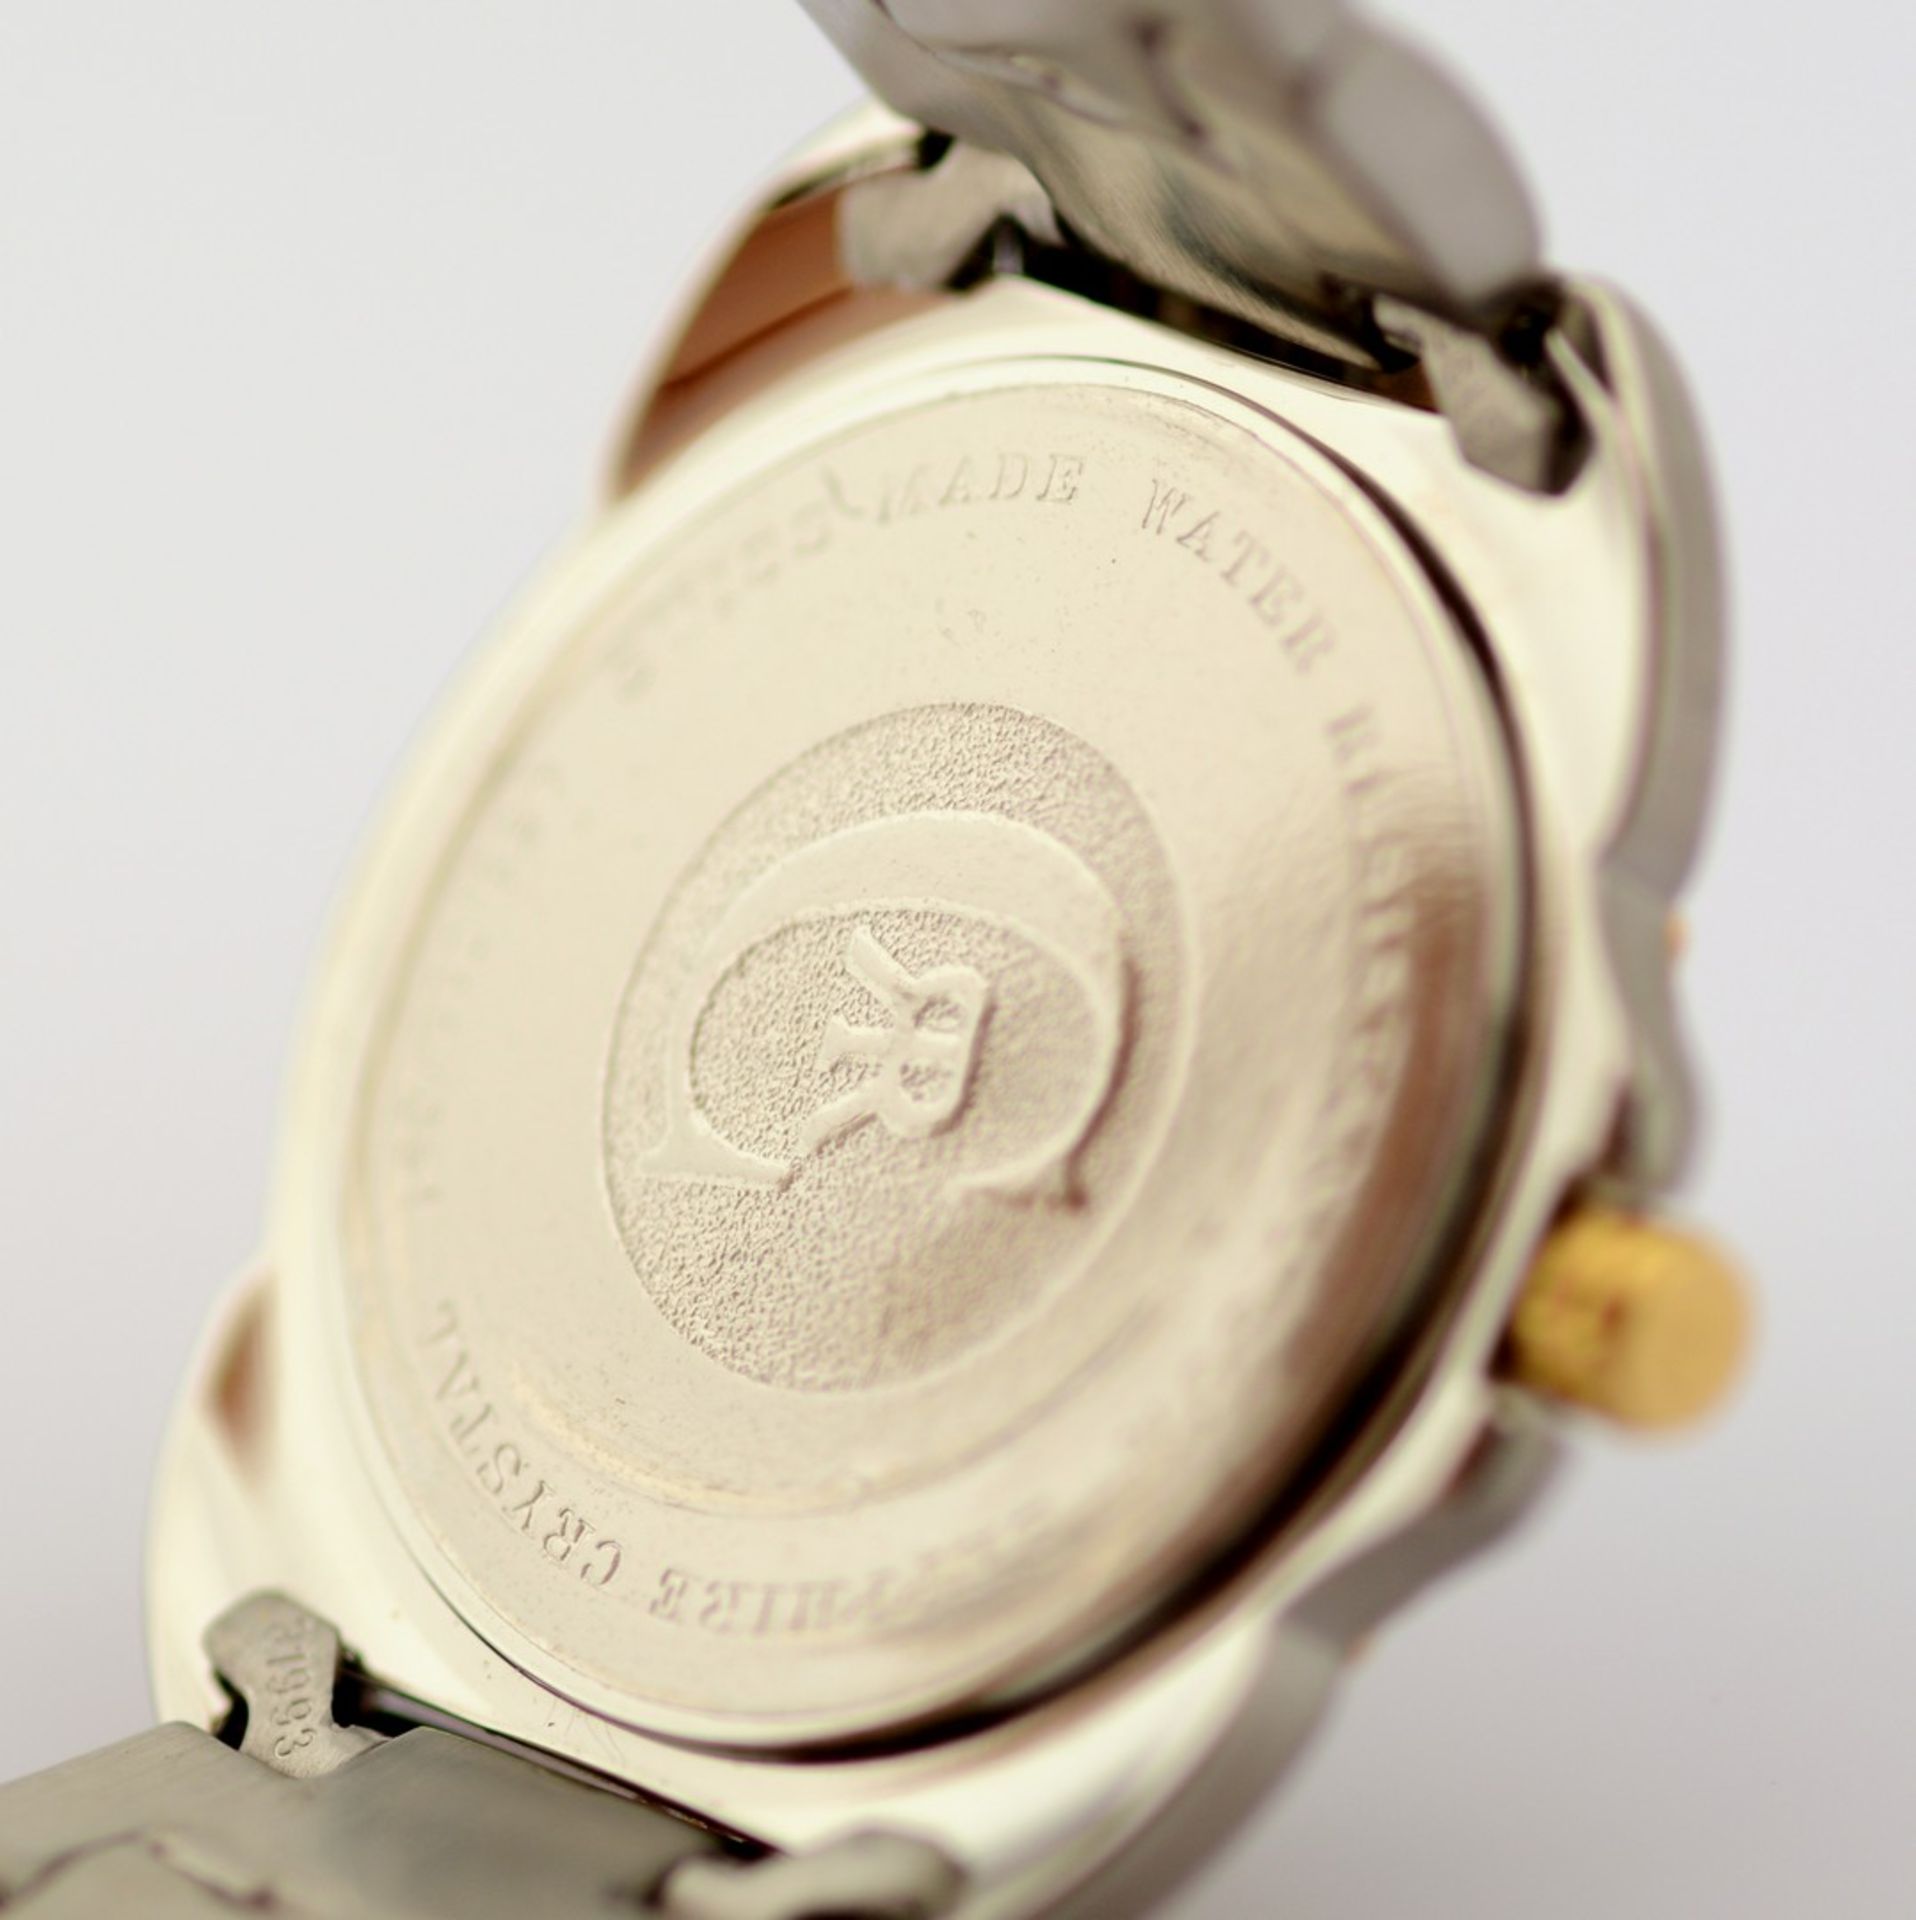 Cerruti / 1881 - Date - (Unworn) Gentlemen's Steel Wrist Watch - Image 5 of 6